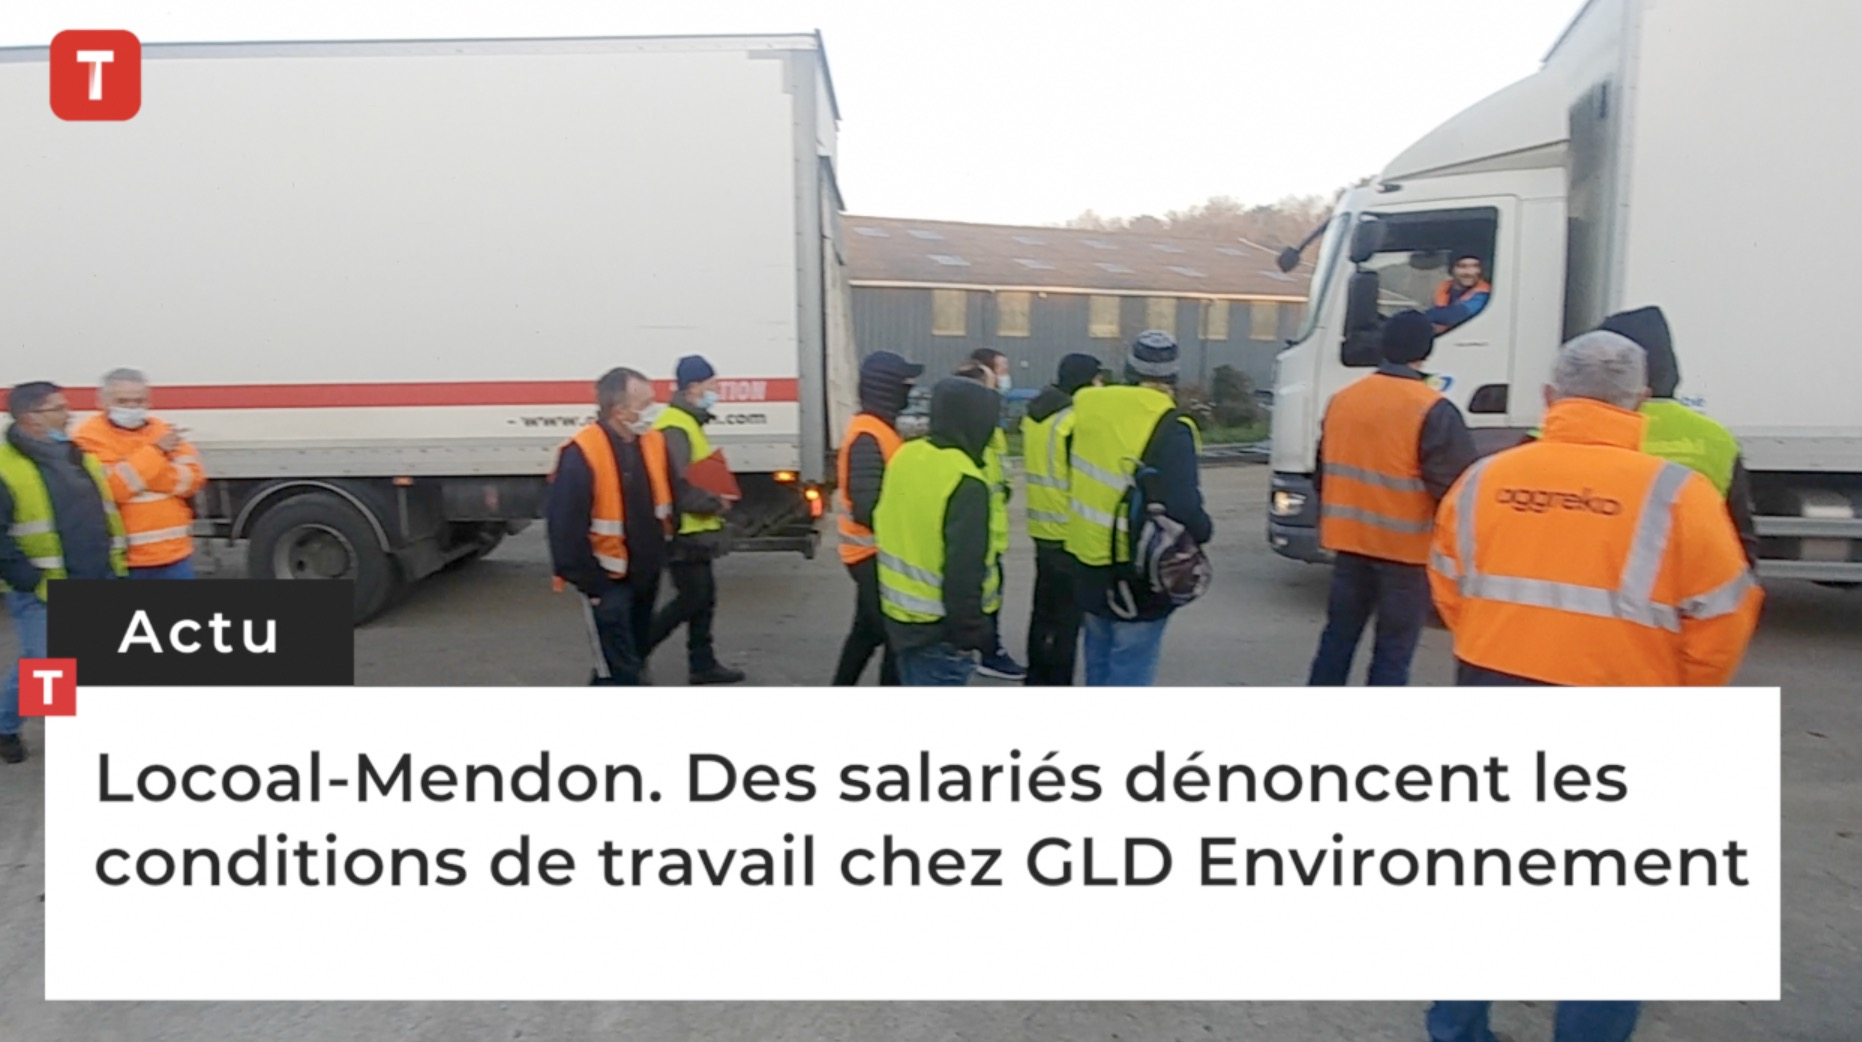 Locoal-Mendon. Des salariés dénoncent les conditions de travail chez GLD Environnement (Le Télégramme)